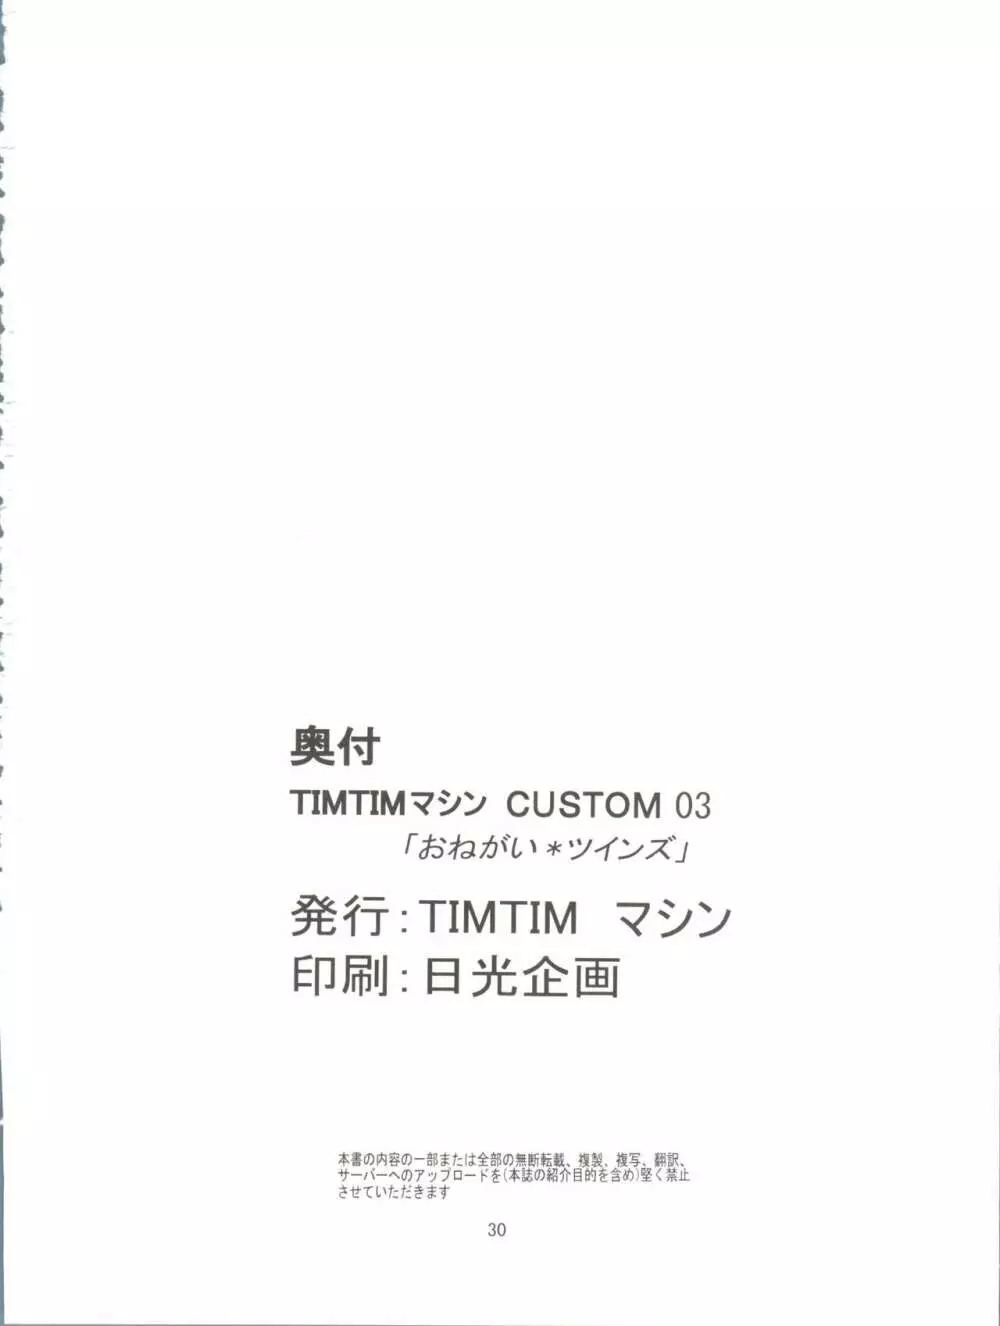 TIMTIMマシン CUSTOM 03 30ページ